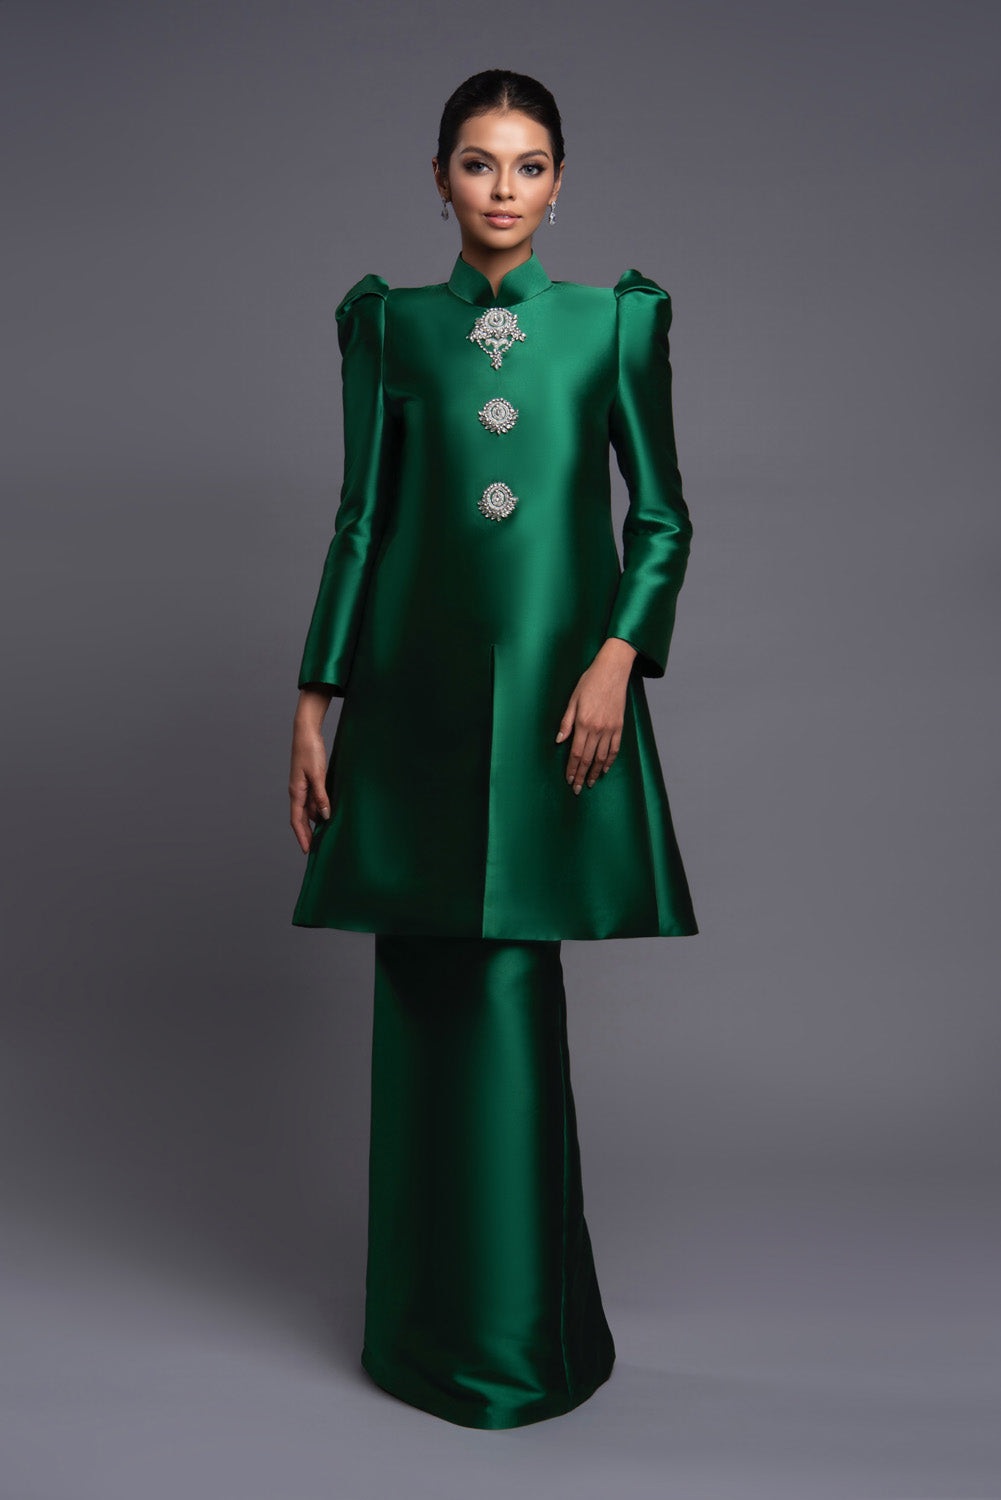 Raesa in Emerald Green